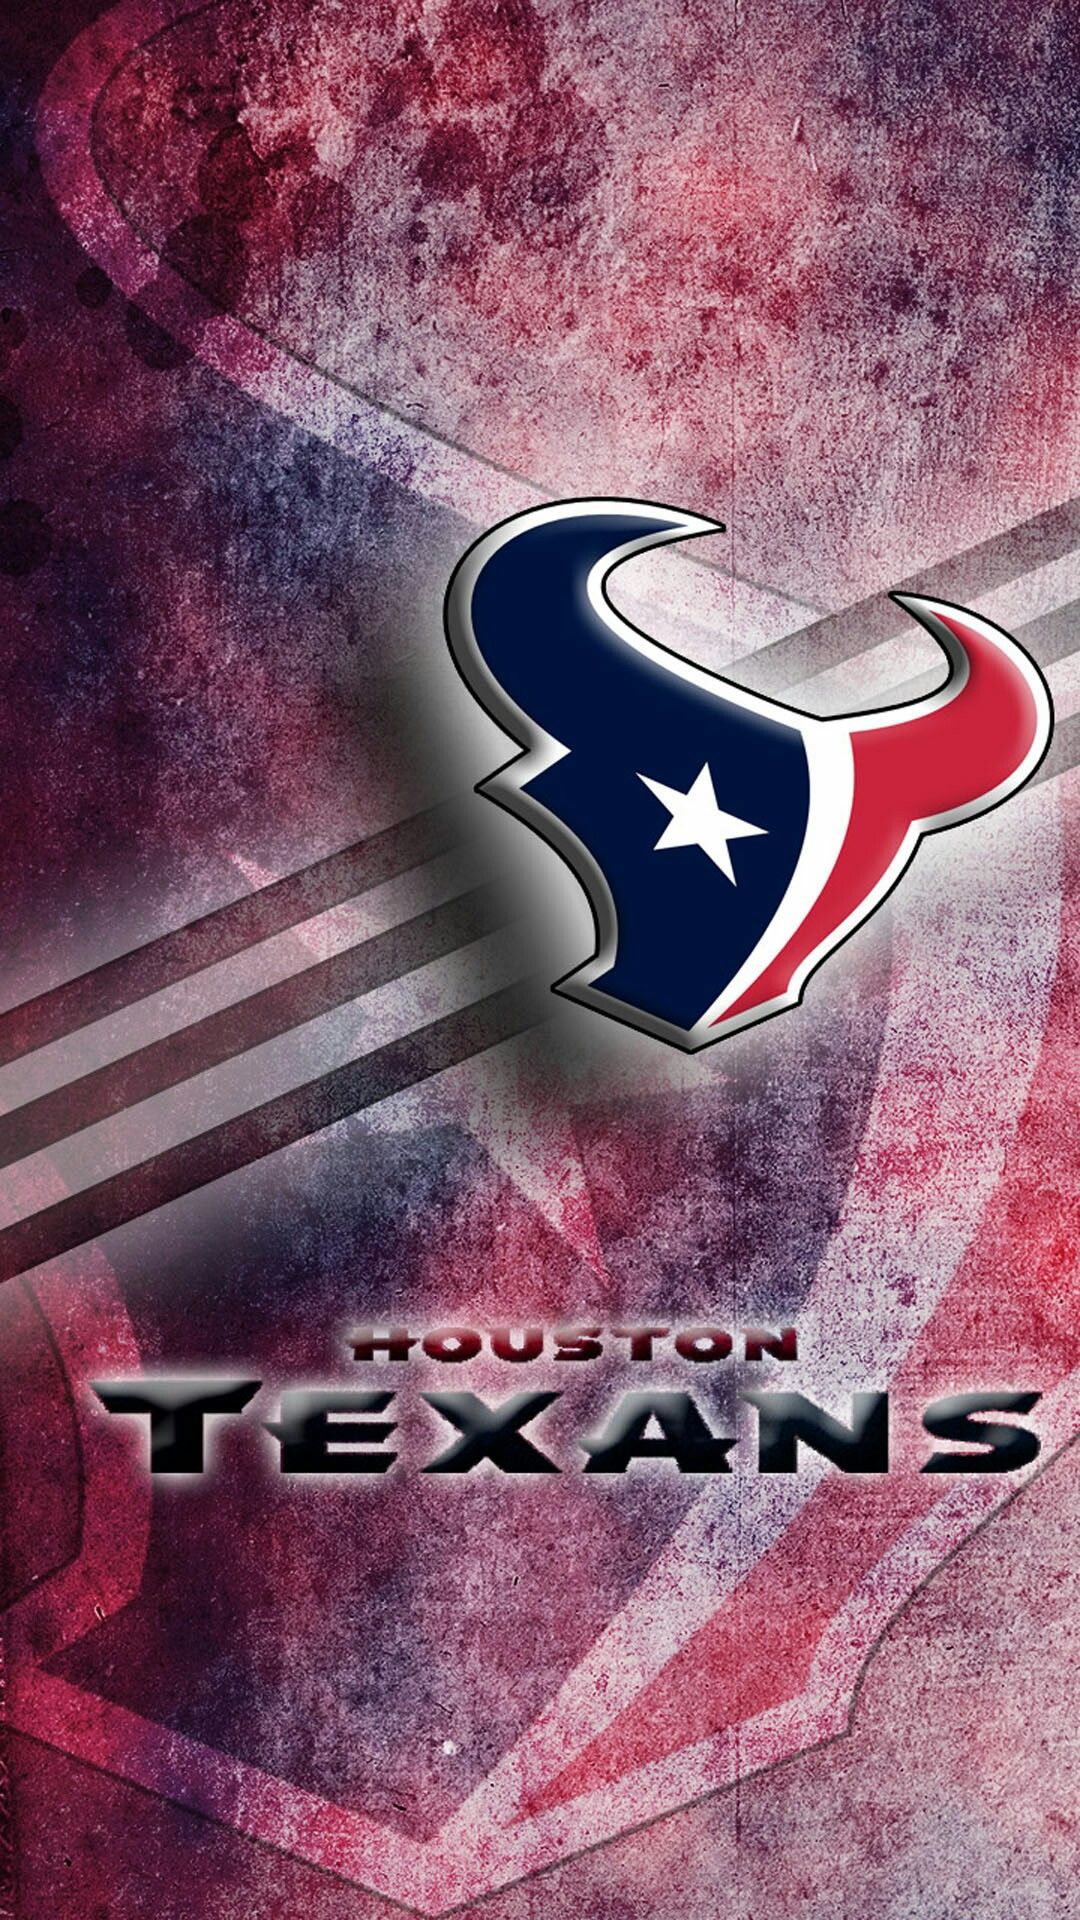 Go Texans Houston texans football Texans football